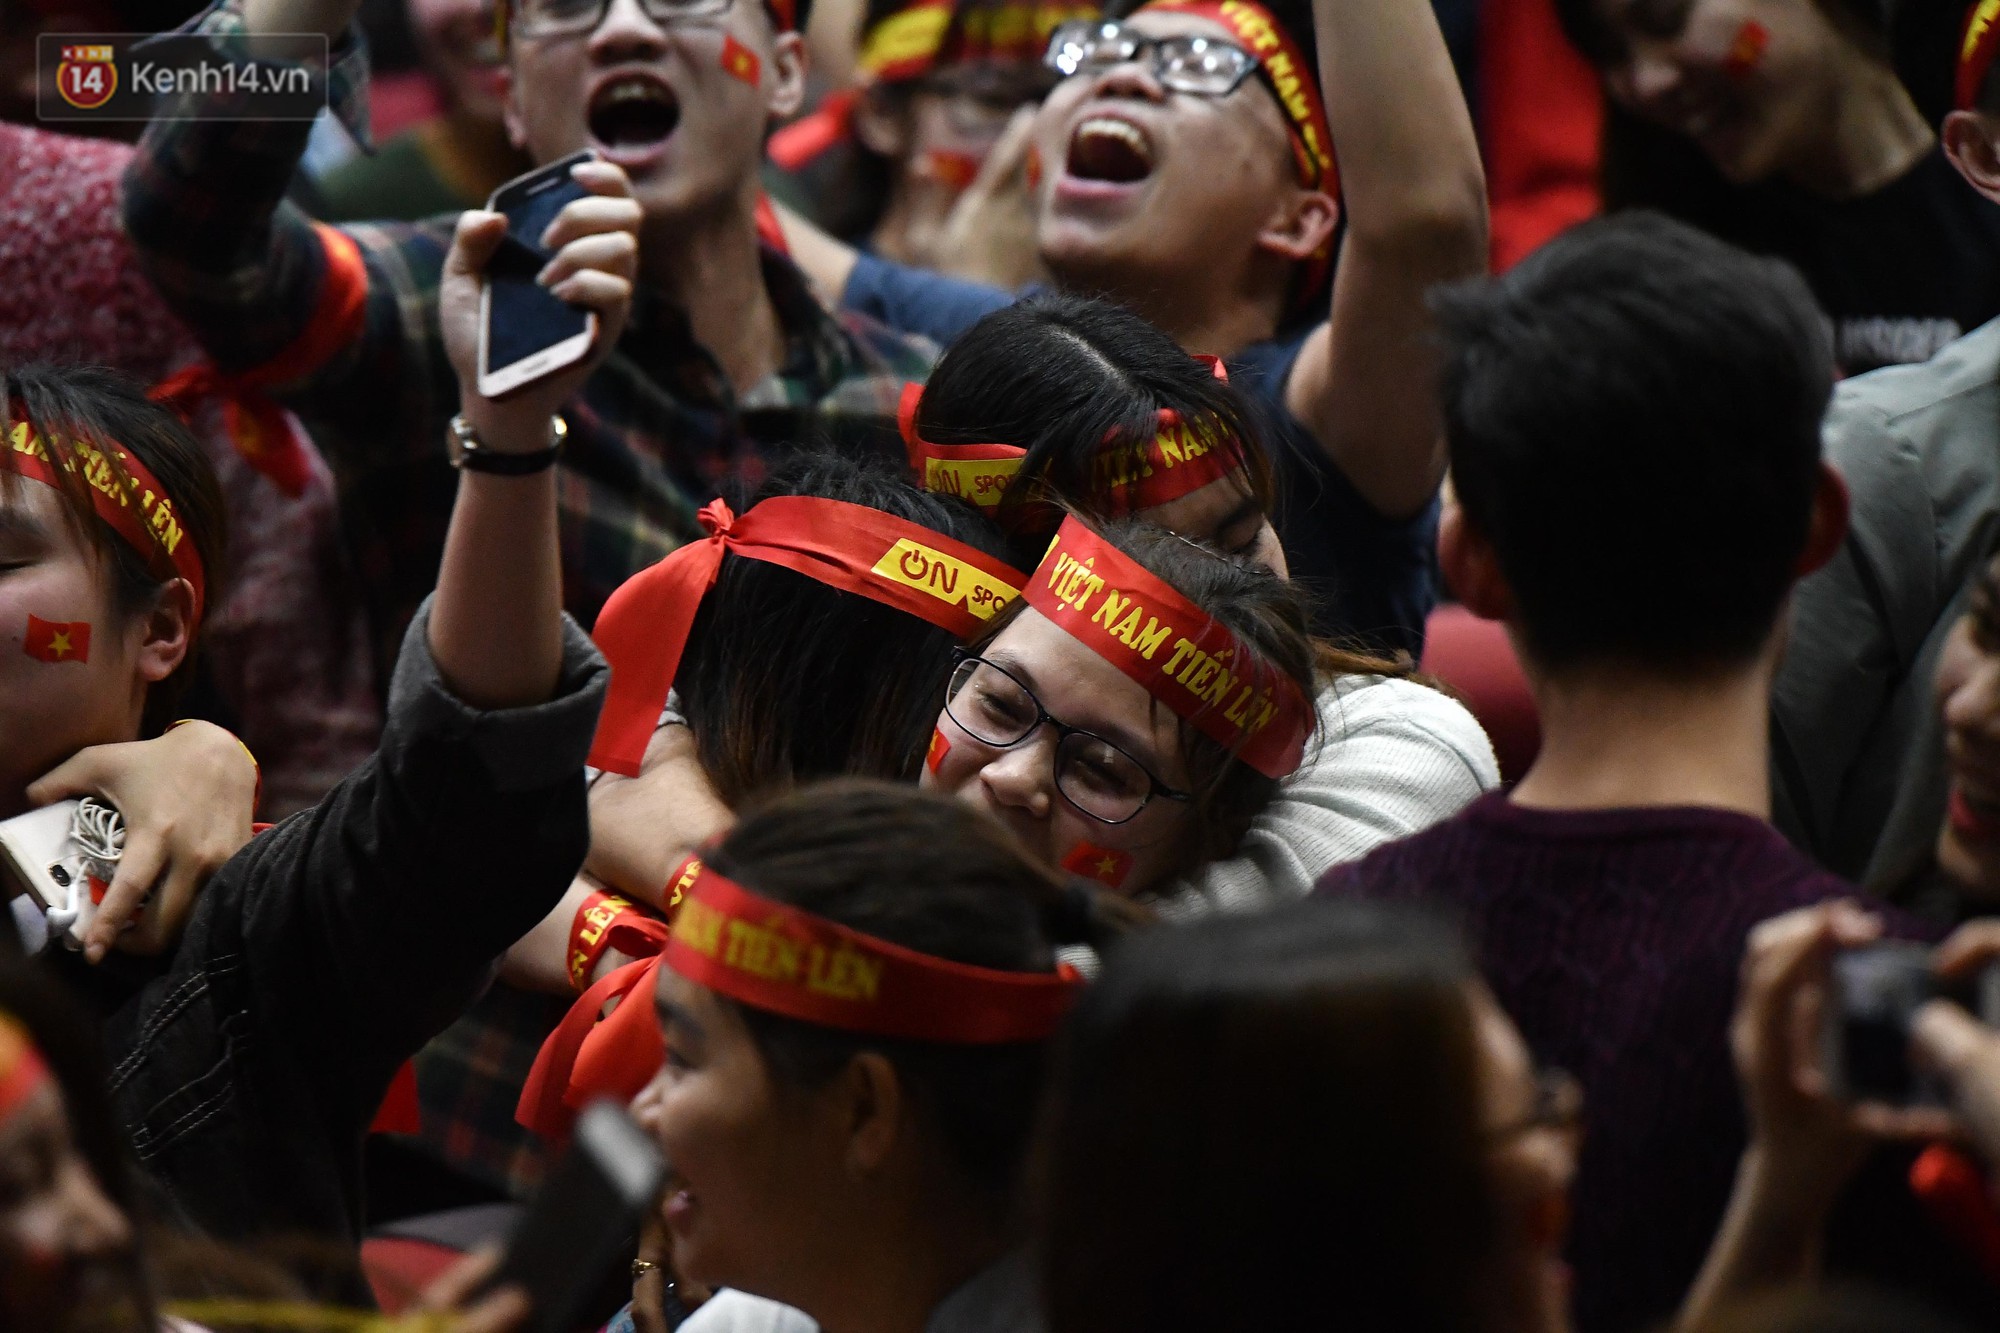 Chùm ảnh: Khoảnh khắc U23 Việt Nam gỡ hòa trong những phút cuối, hàng triệu người đã nắm tay, ôm nhau hạnh phúc nhường này - Ảnh 10.